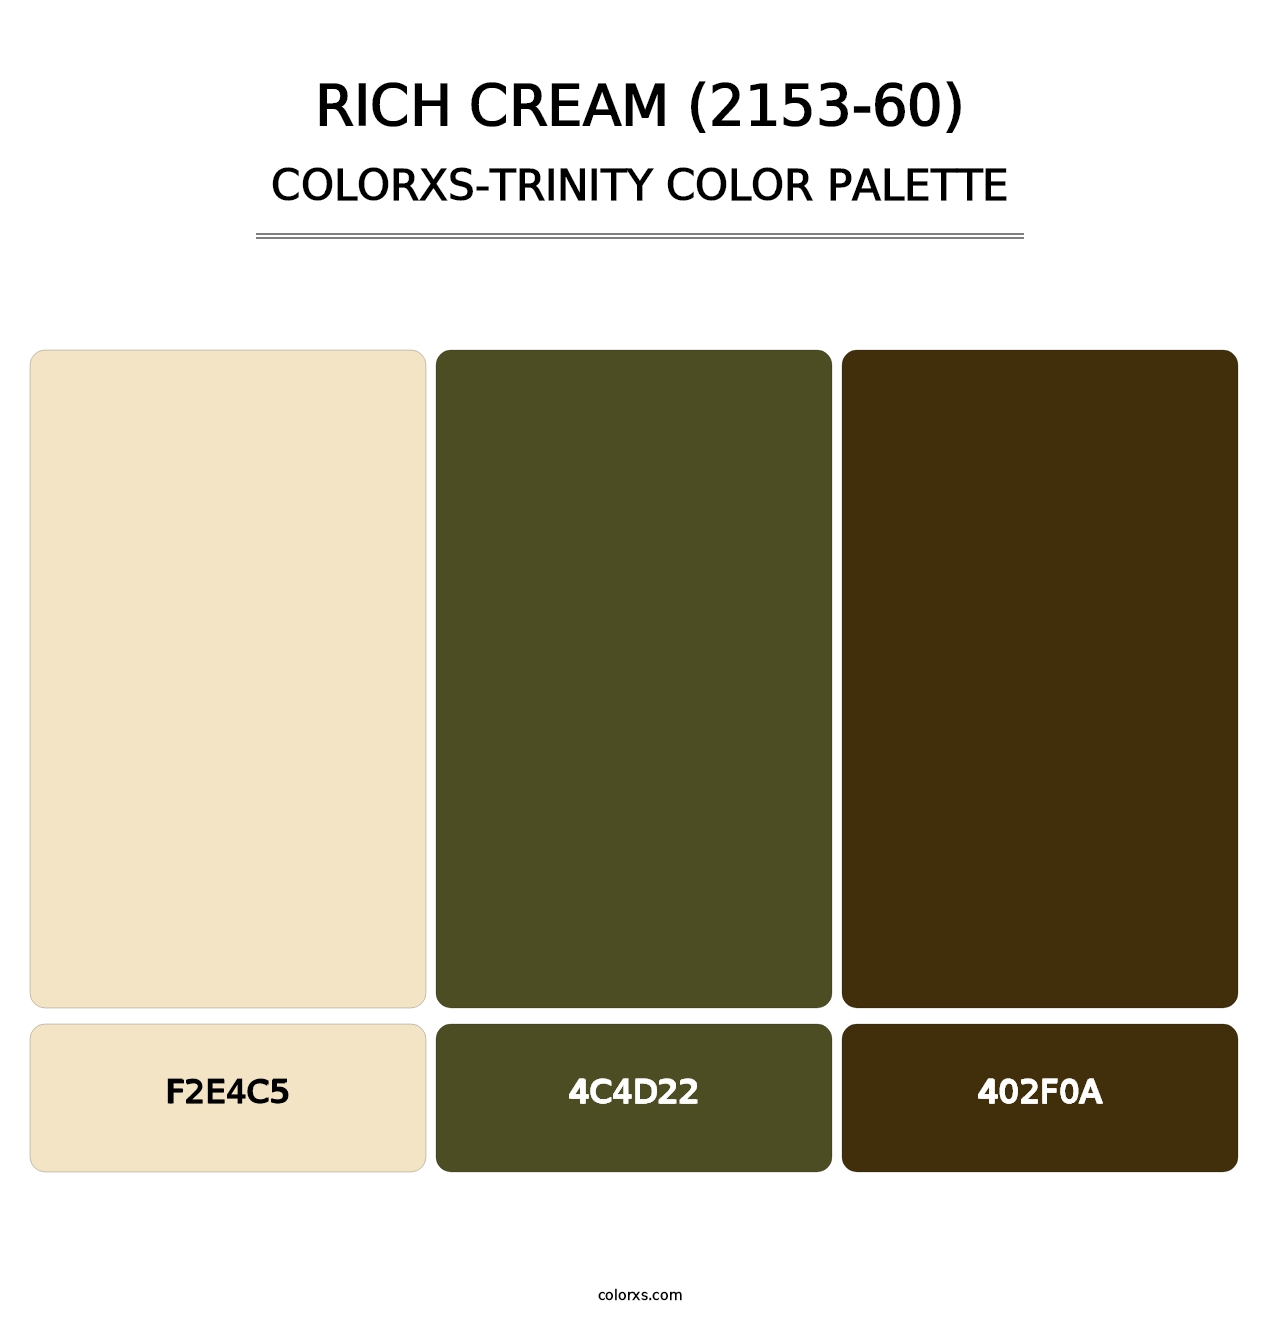 Rich Cream (2153-60) - Colorxs Trinity Palette